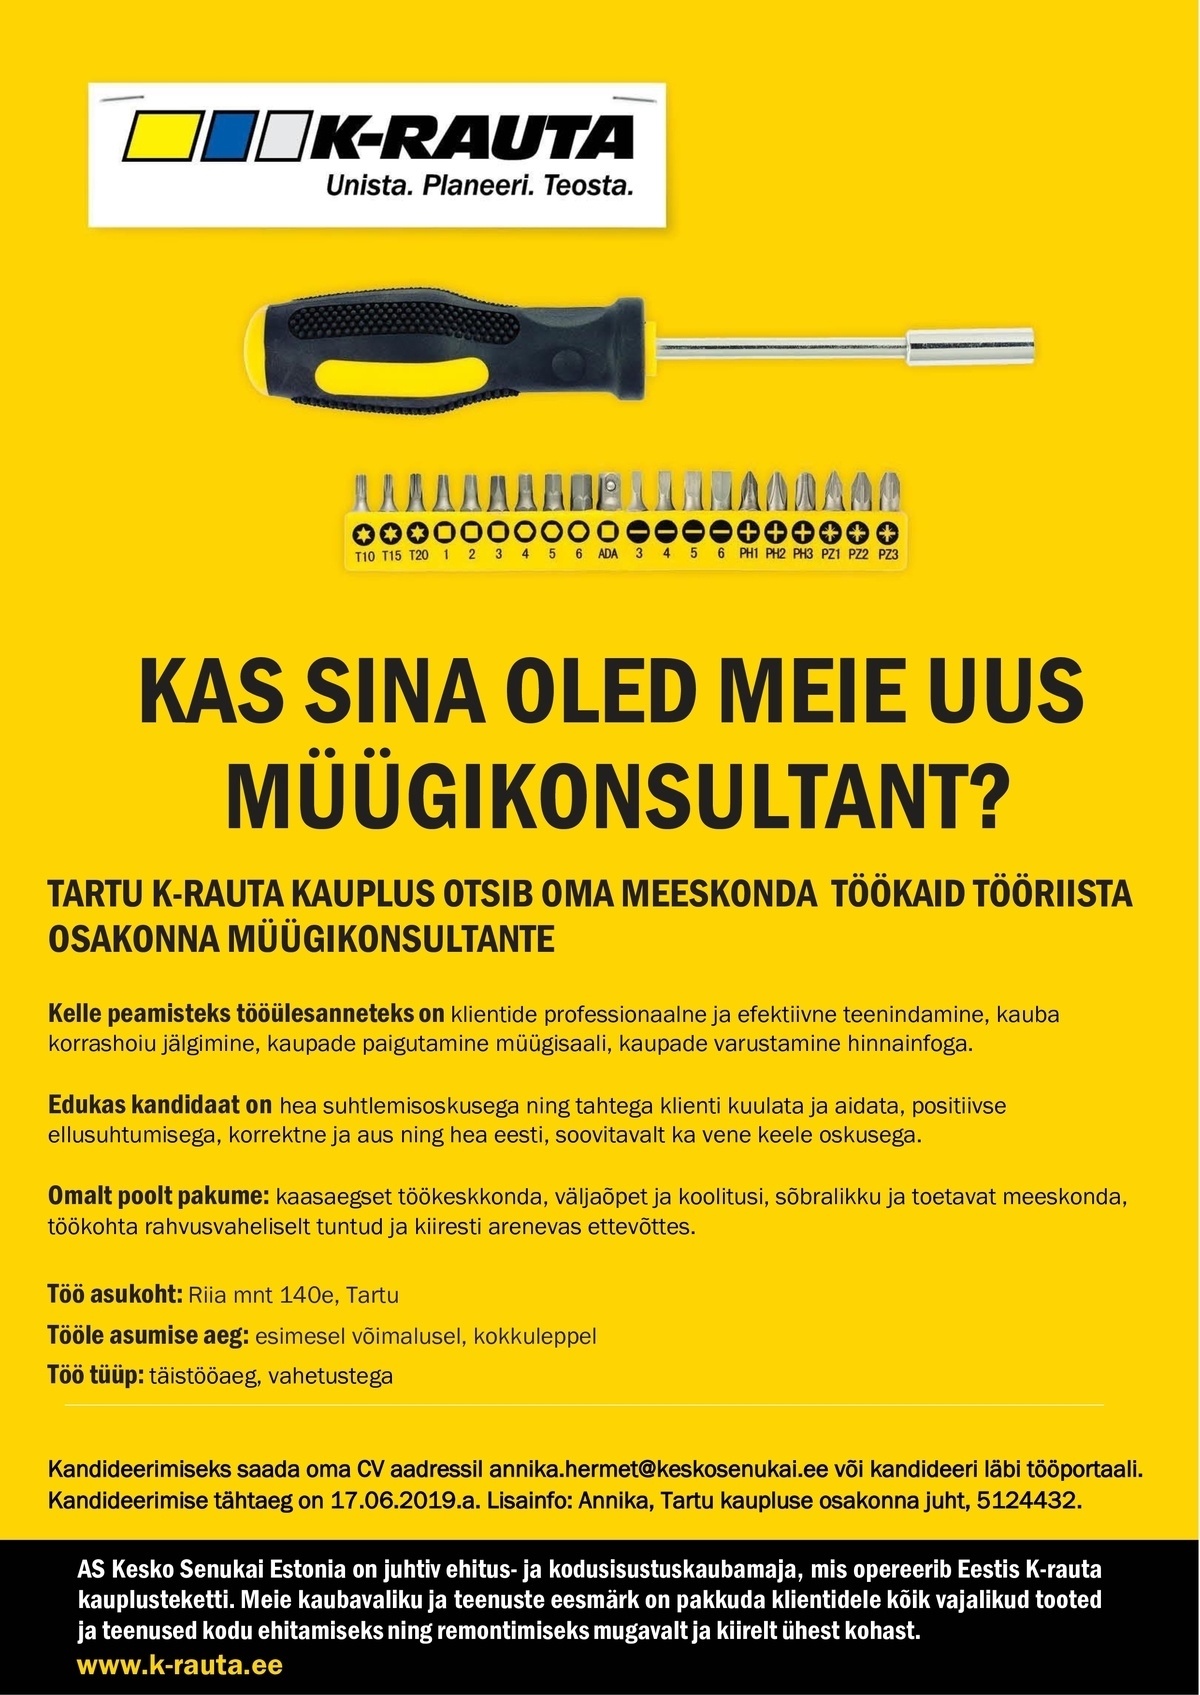 AS Kesko Senukai Estonia Müügikonsultant tööriista osakonda Tartu K-rauta kauplusesse